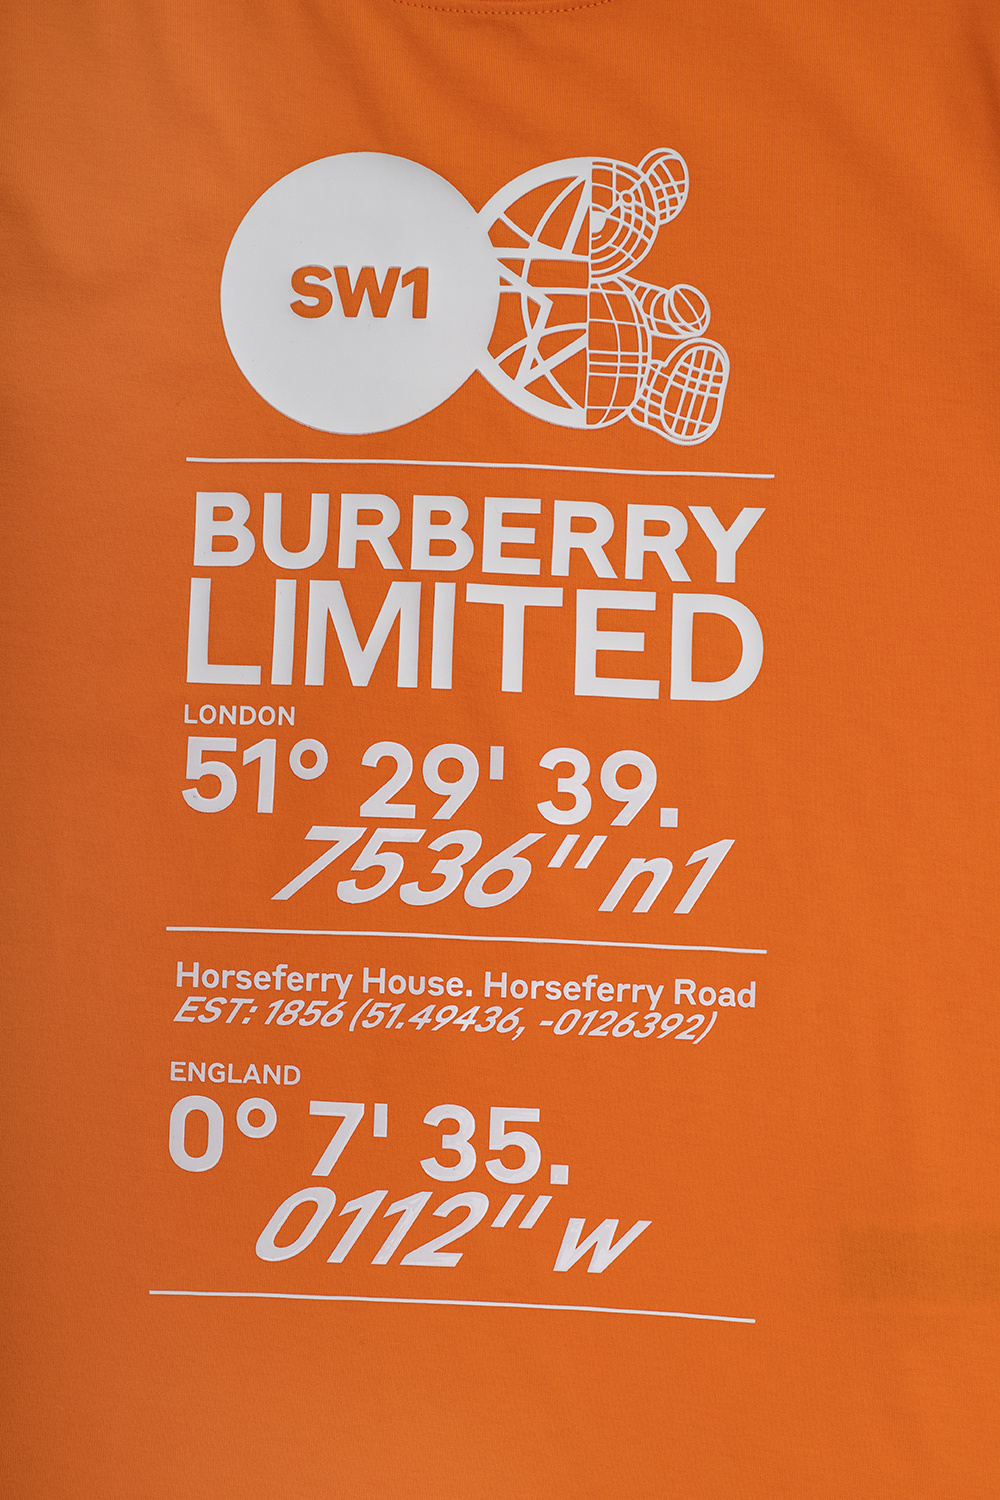 burberry SZORTY Kids ‘Joel’ T-shirt with logo